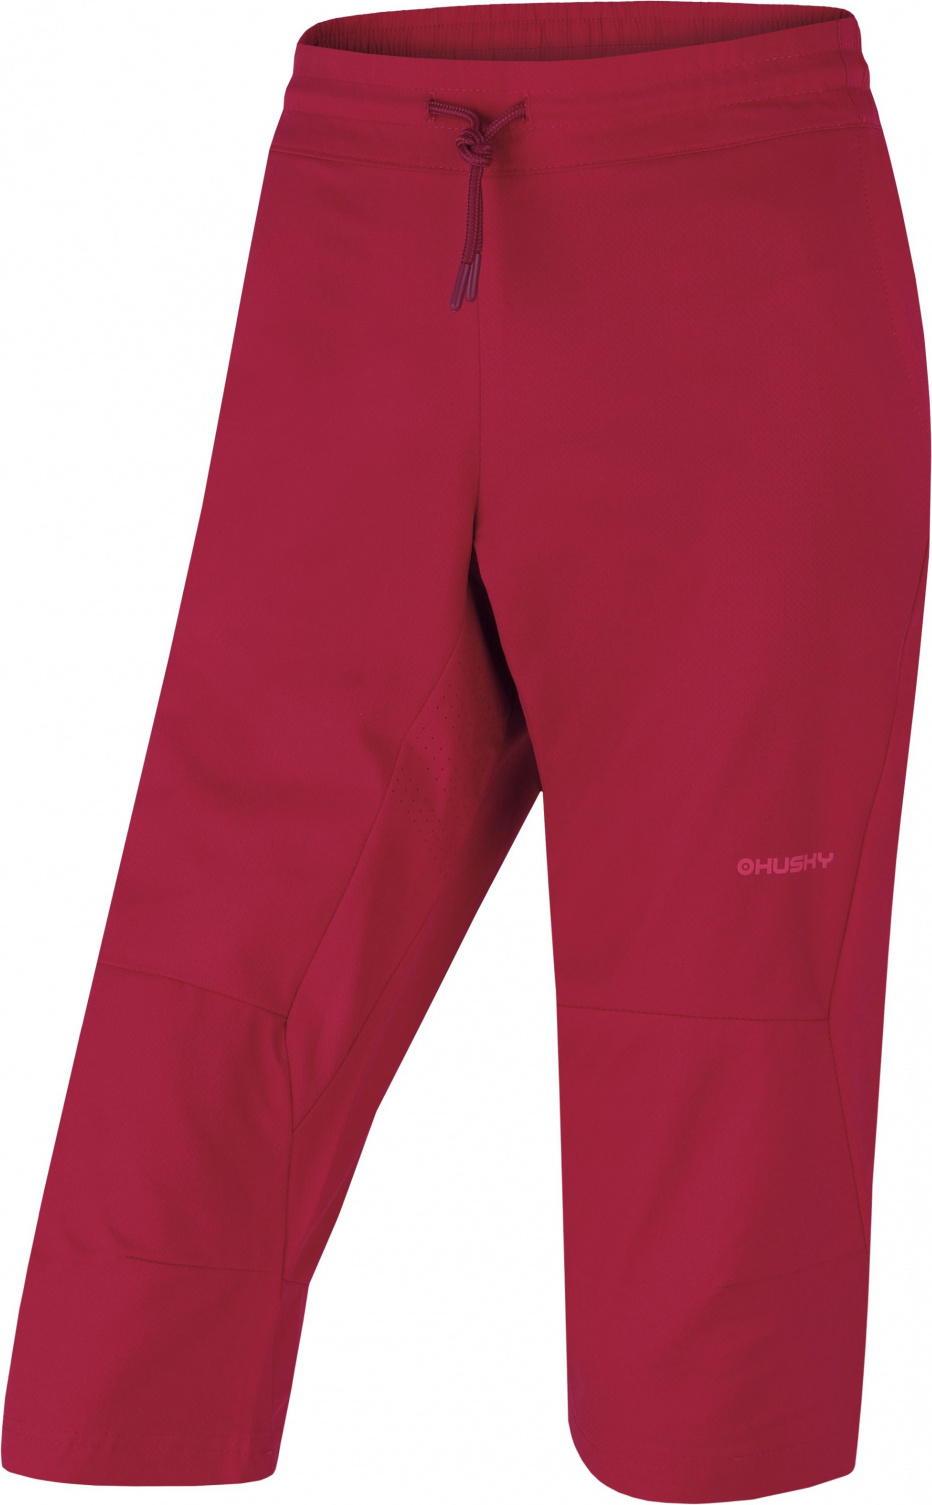 Dámské outdoorové 3/4 kalhoty HUSKY Speedy červené Velikost: XS